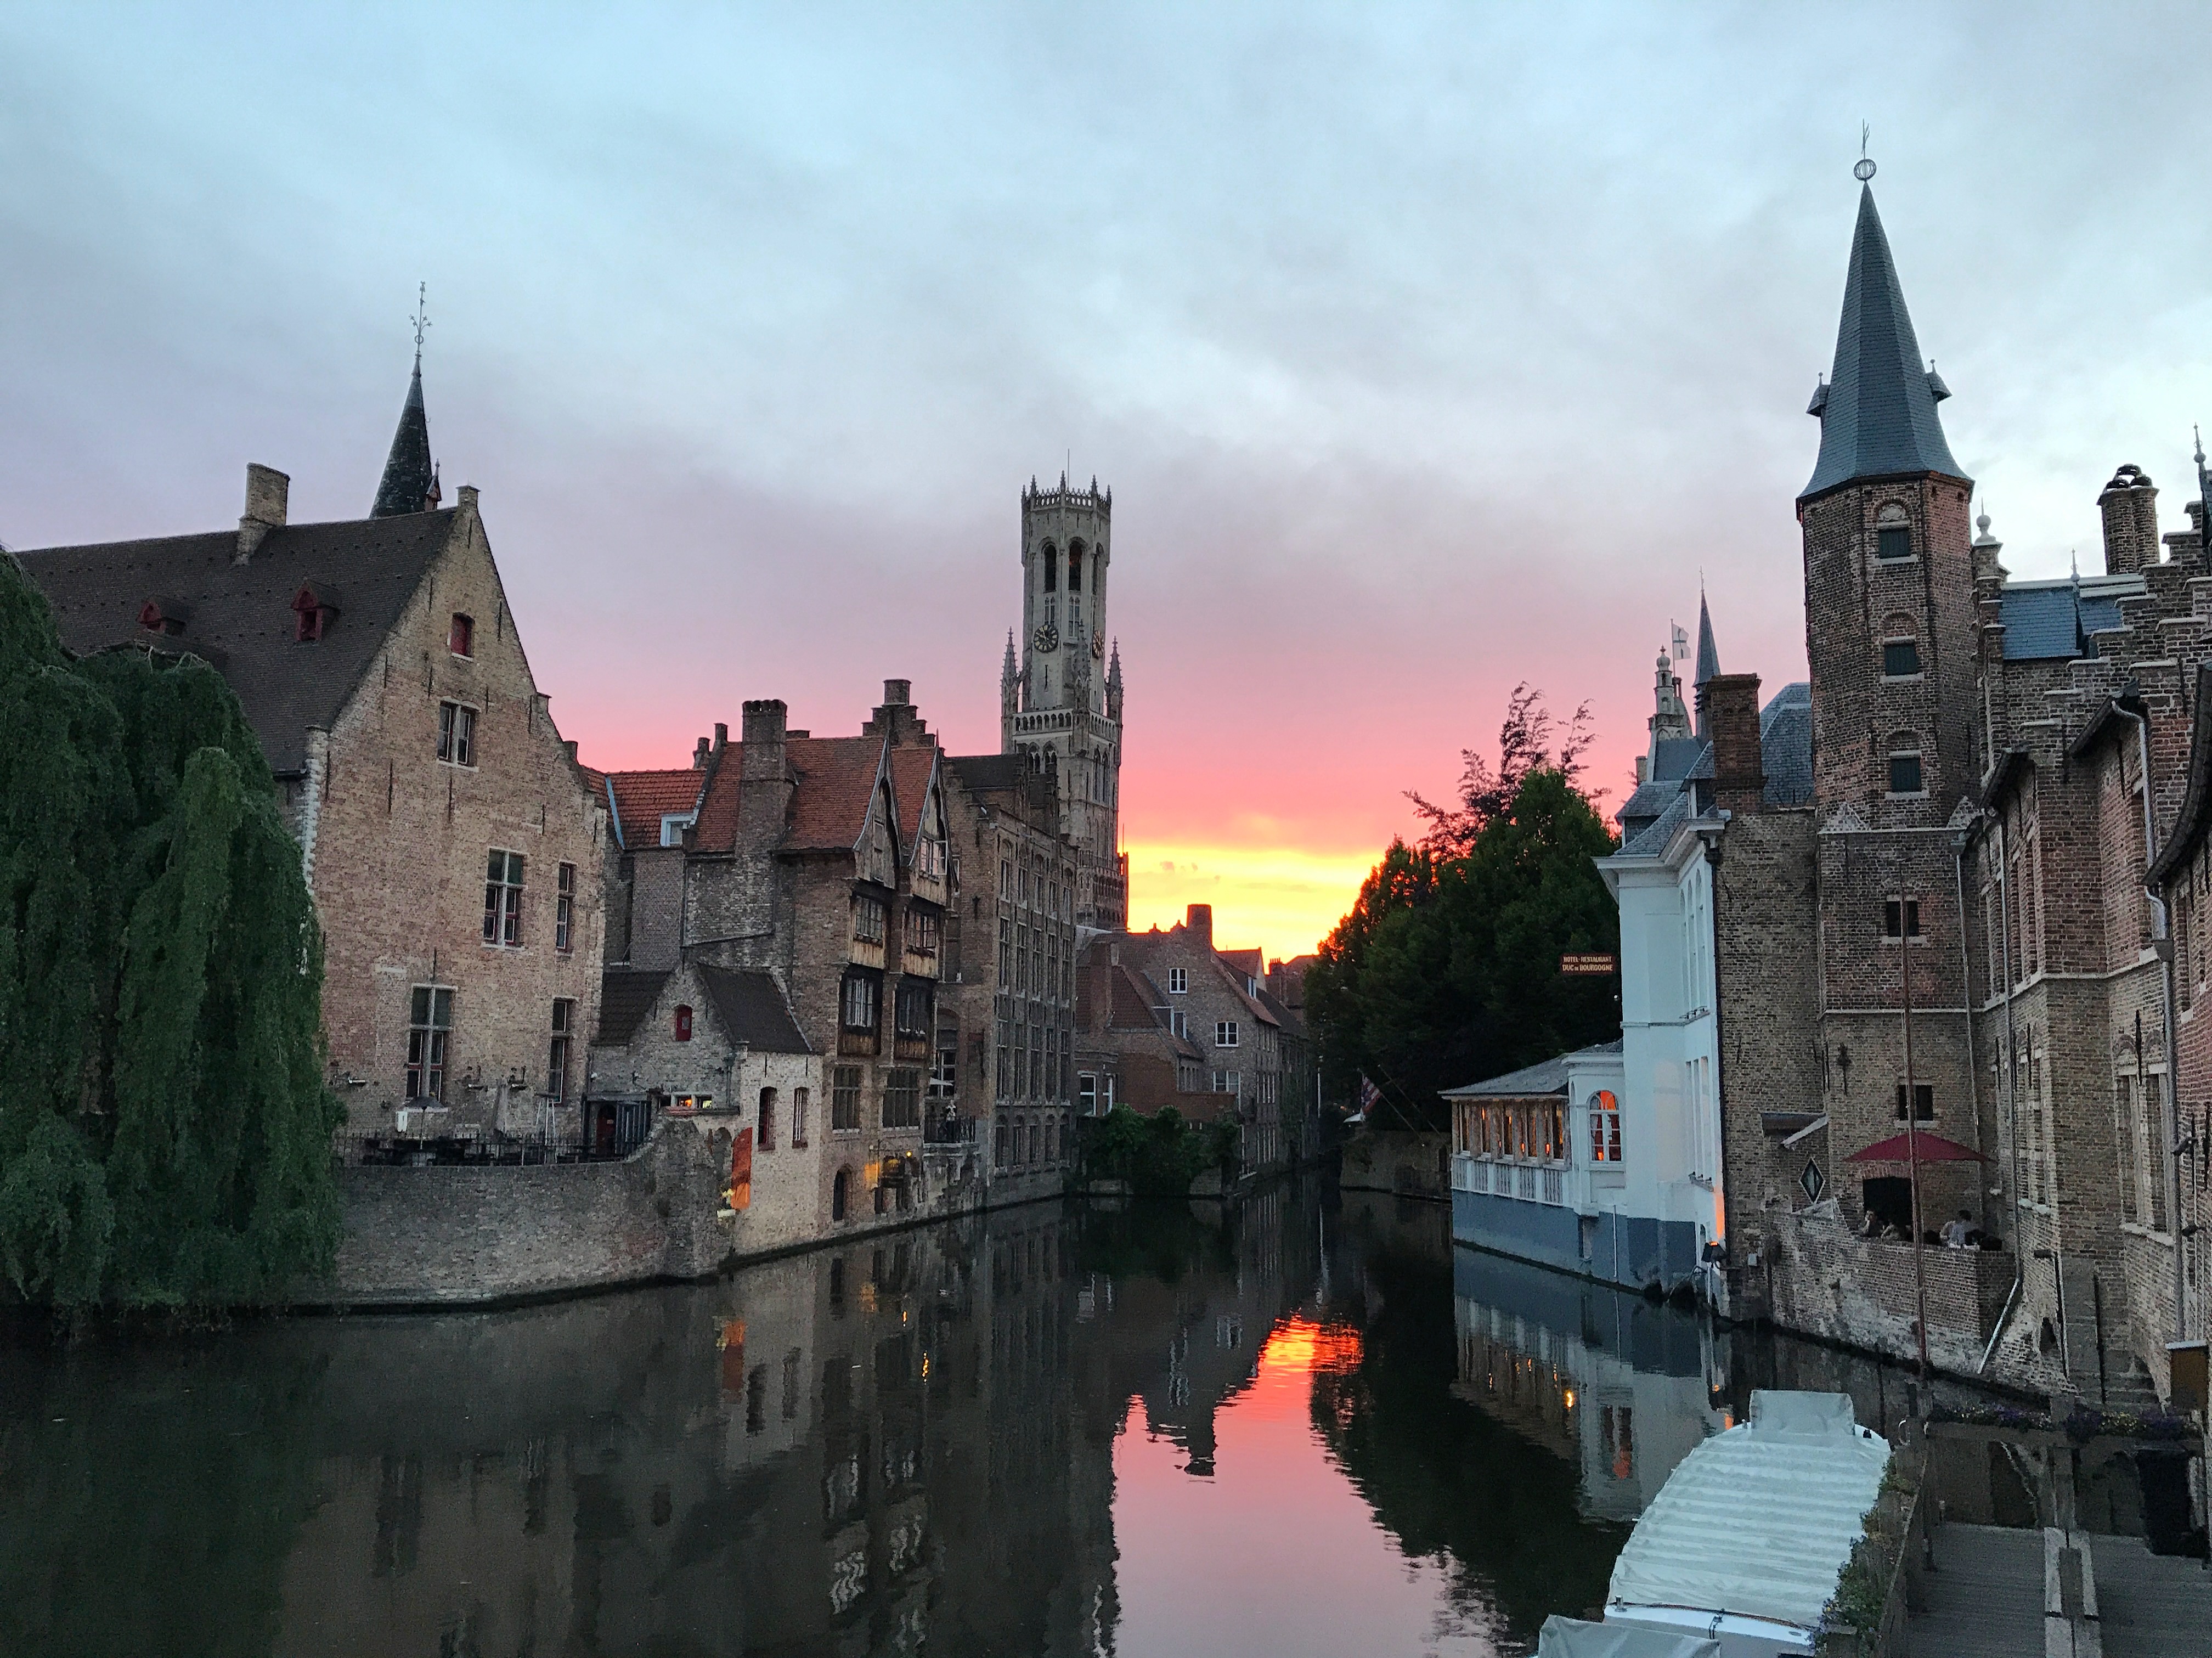 Golden hour in Bruges, Belgium.